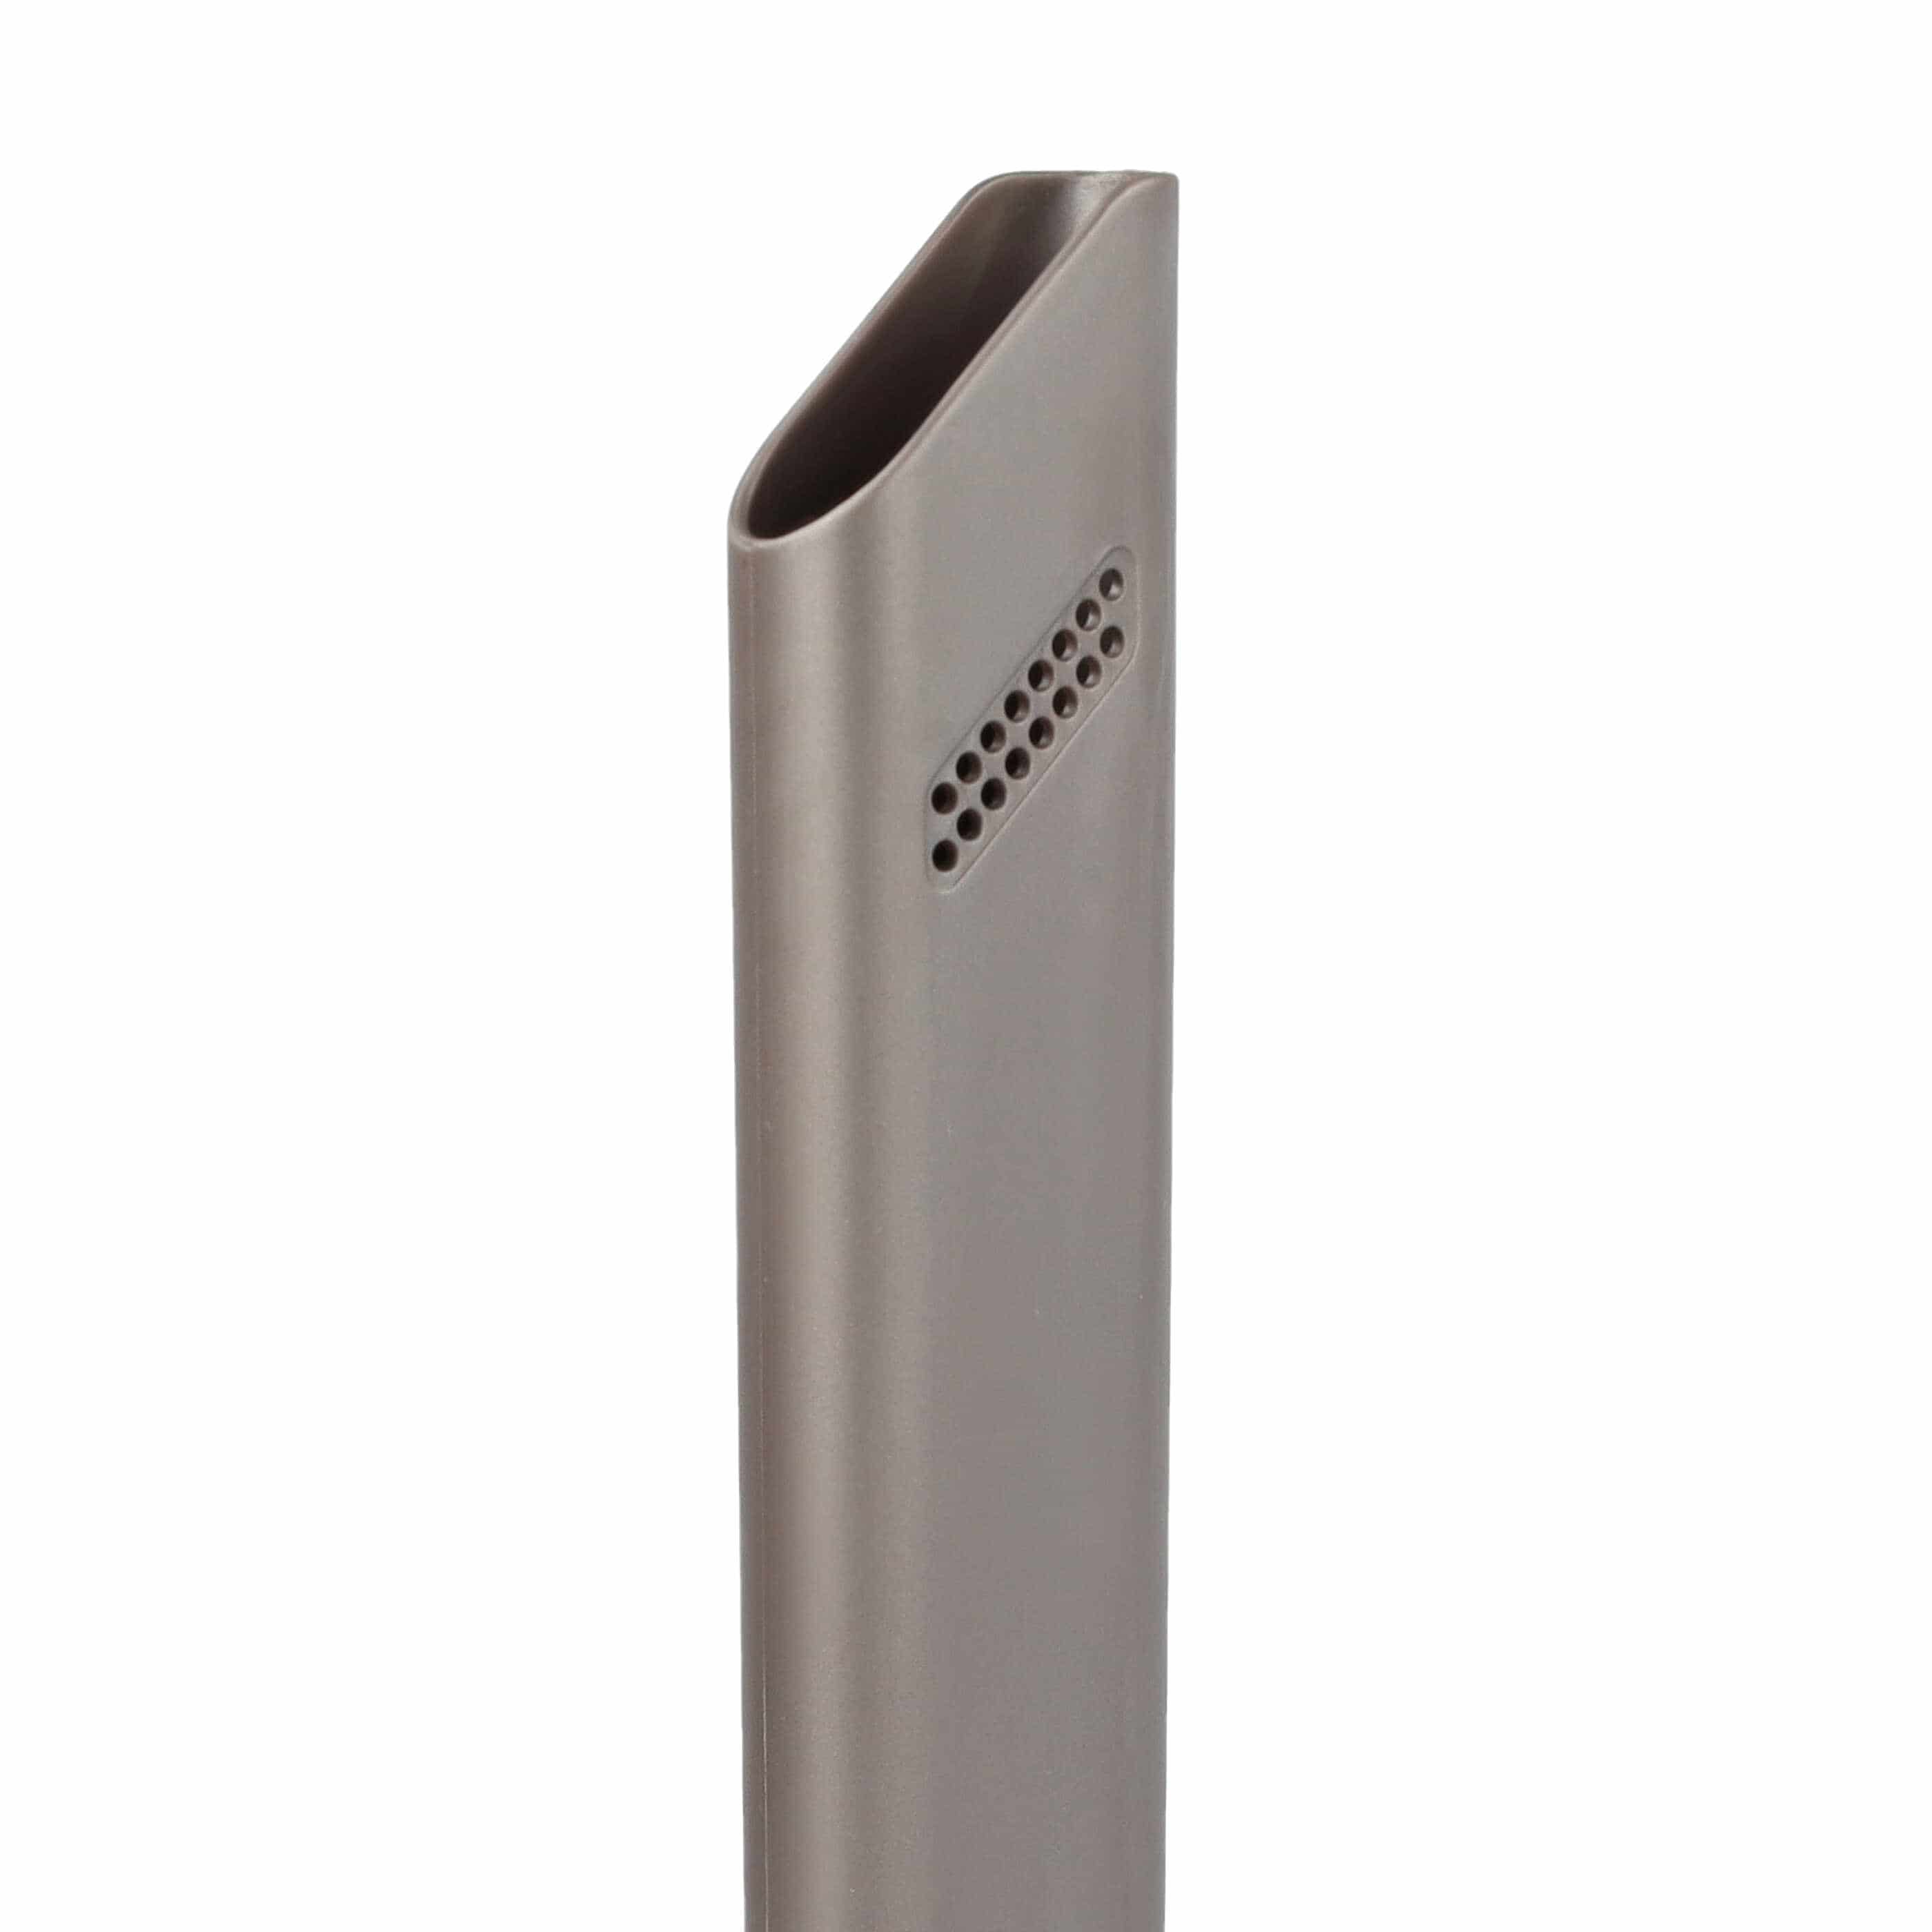 Vacuum Cleaner Crevice Nozzle replaces Dyson 967612-01 suitable for Dyson - 24 cm